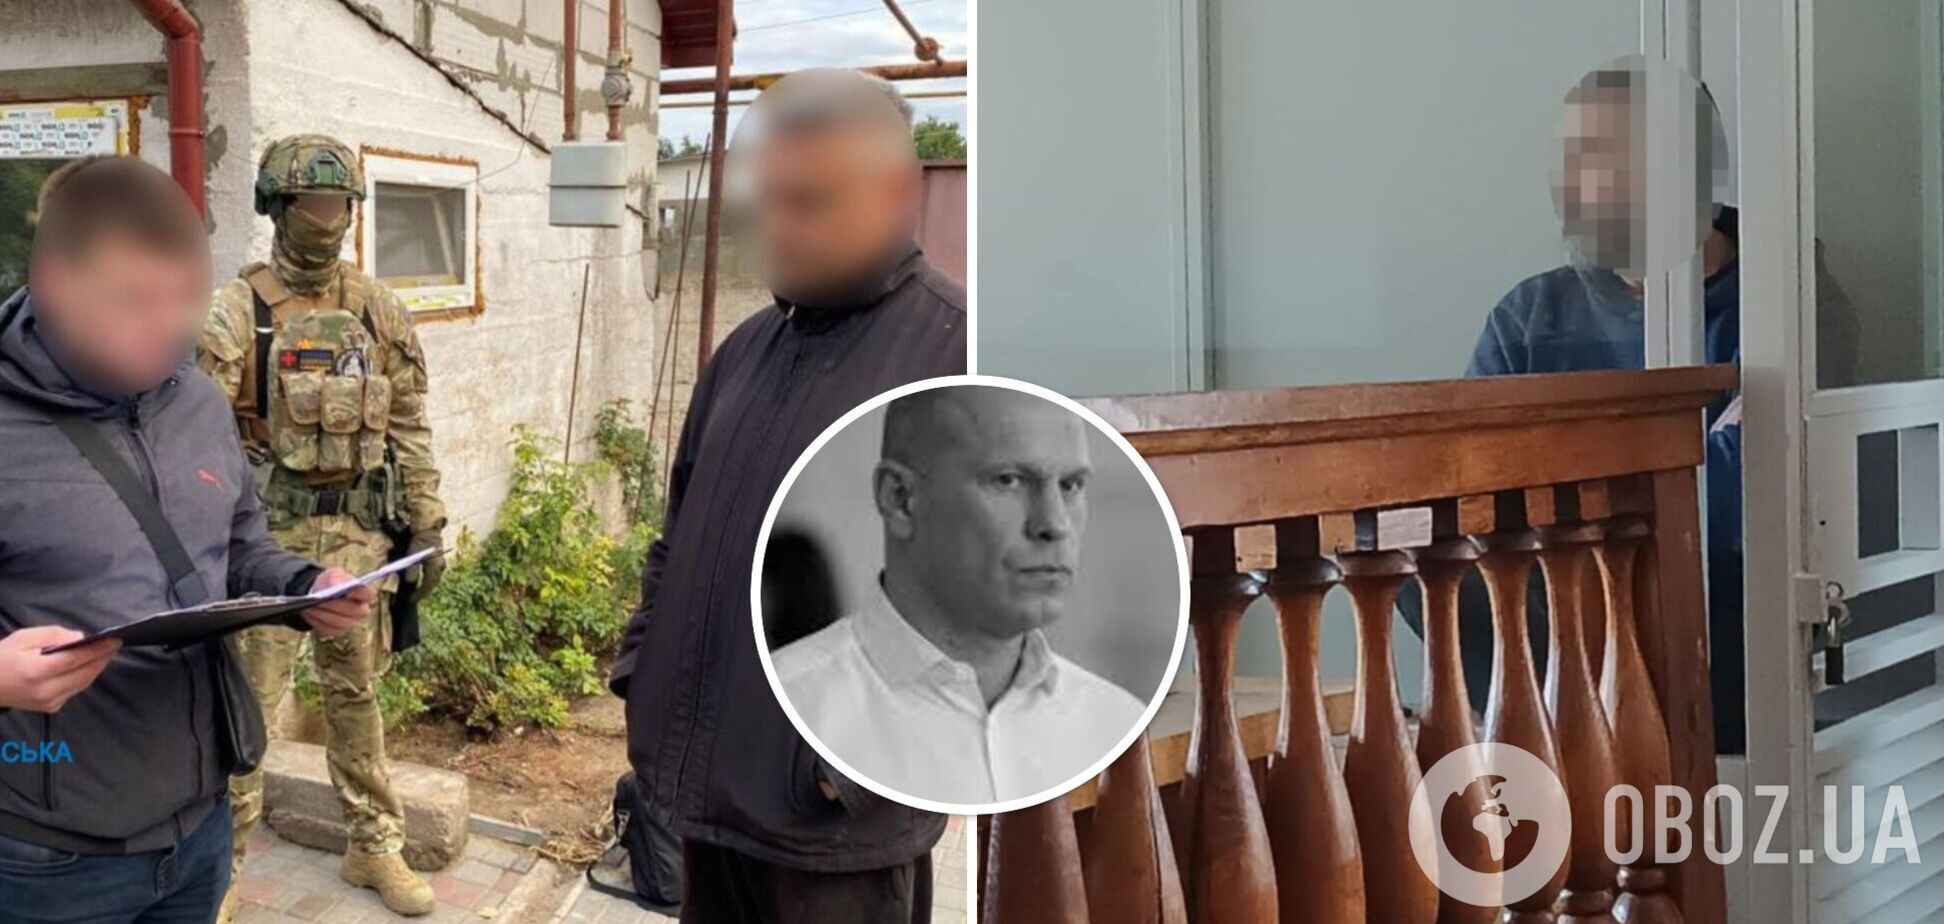 Соратнику Кивы, шпионившему за комплексами ПВО на Днепропетровщине, дали 15 лет тюрьмы